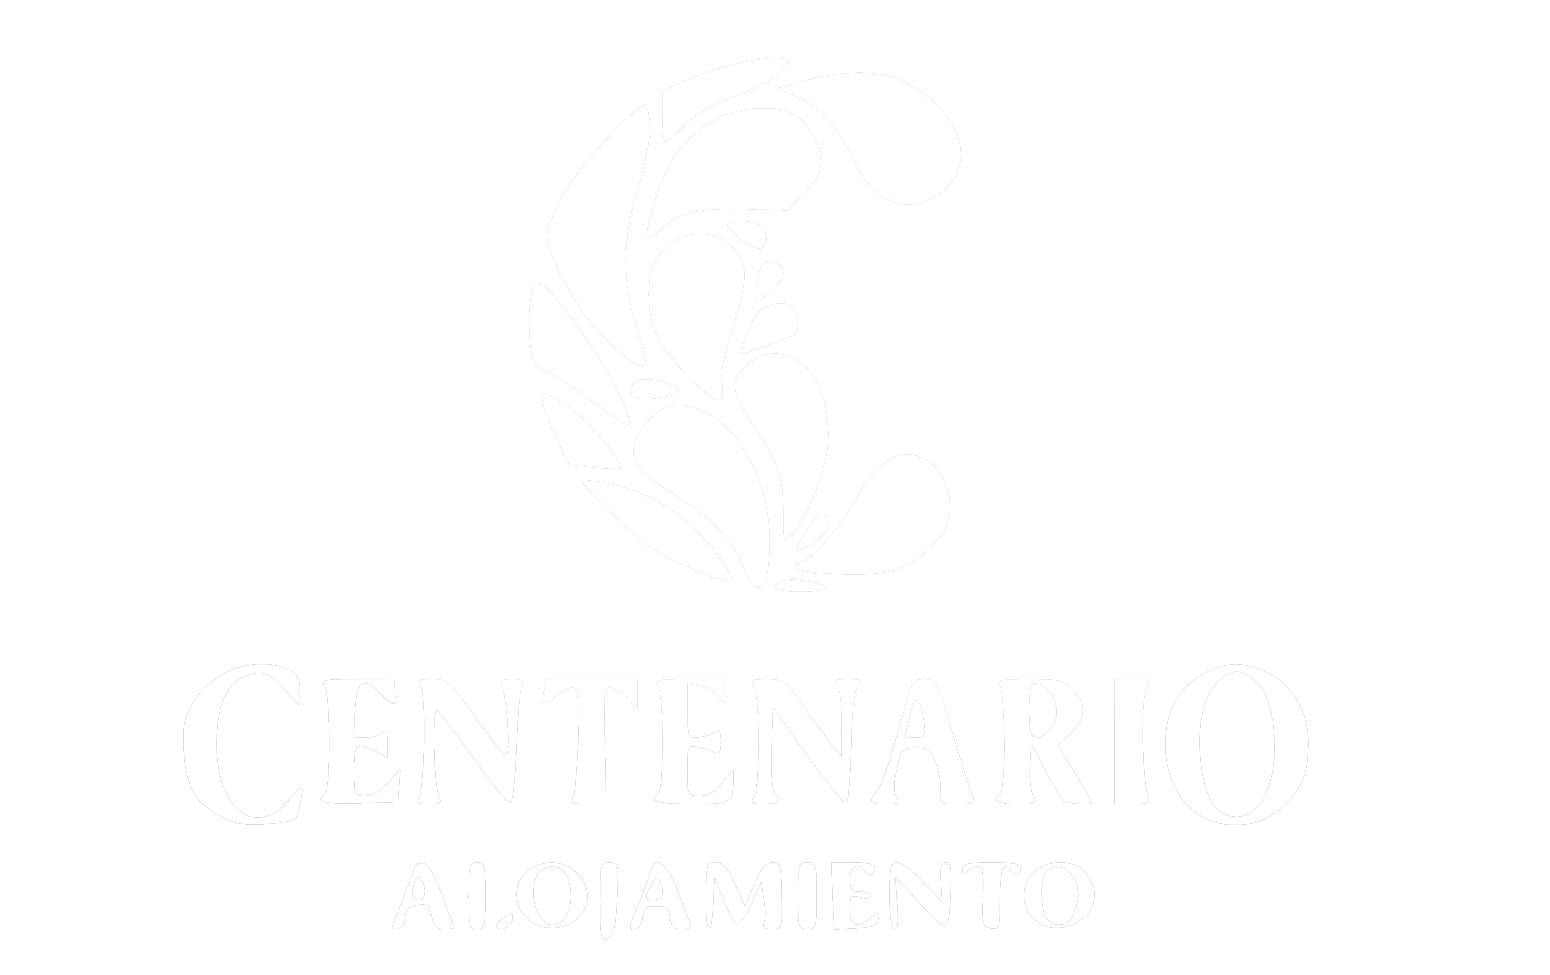 Logo Centenario